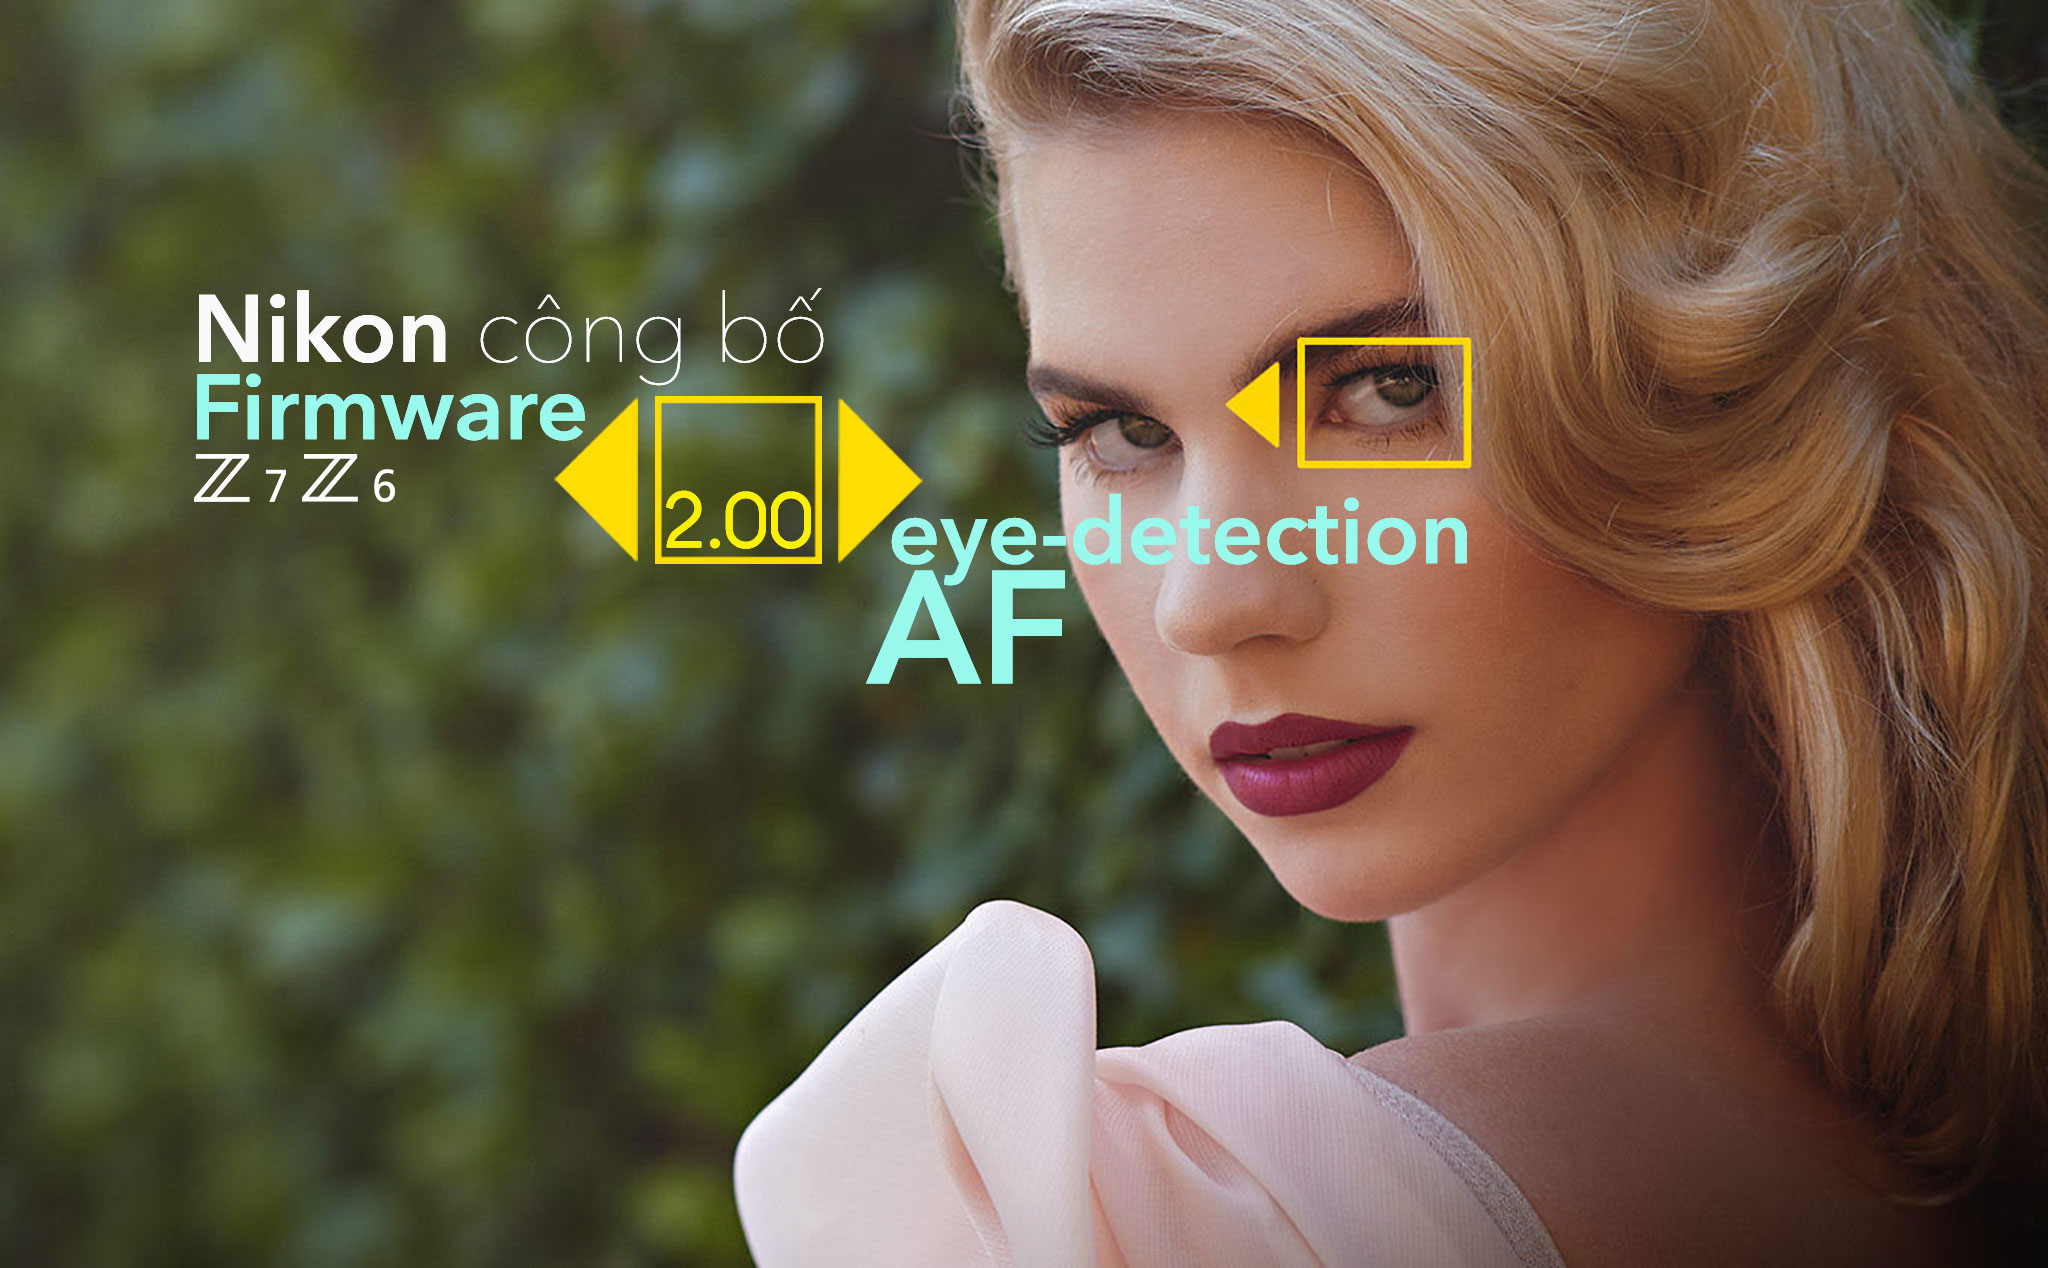 Nikon công bố firmware update mới 2.00 bổ sung khả năng lấy nét mắt Eye-detection AF cho Z6/Z7